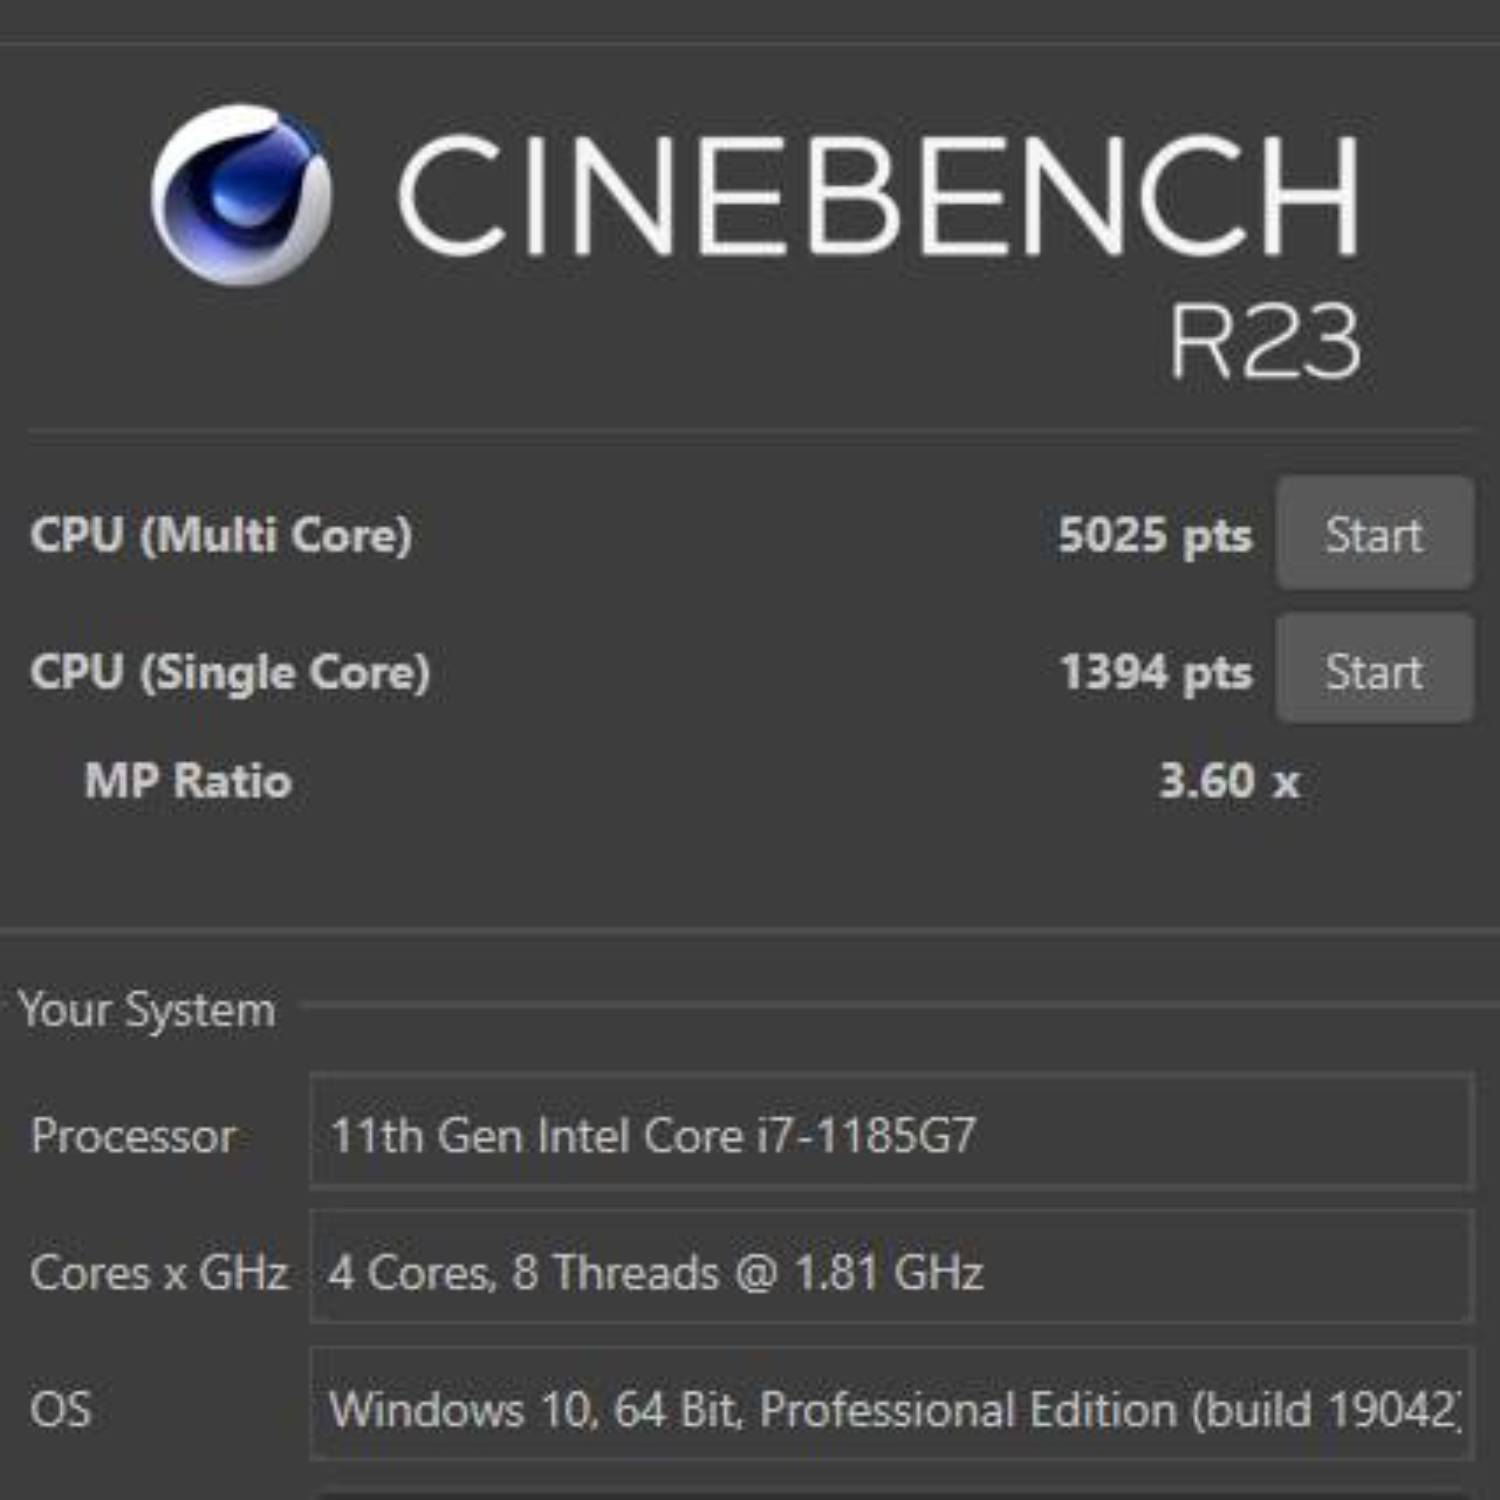 Dell Precision 3560 R23 Cinebench